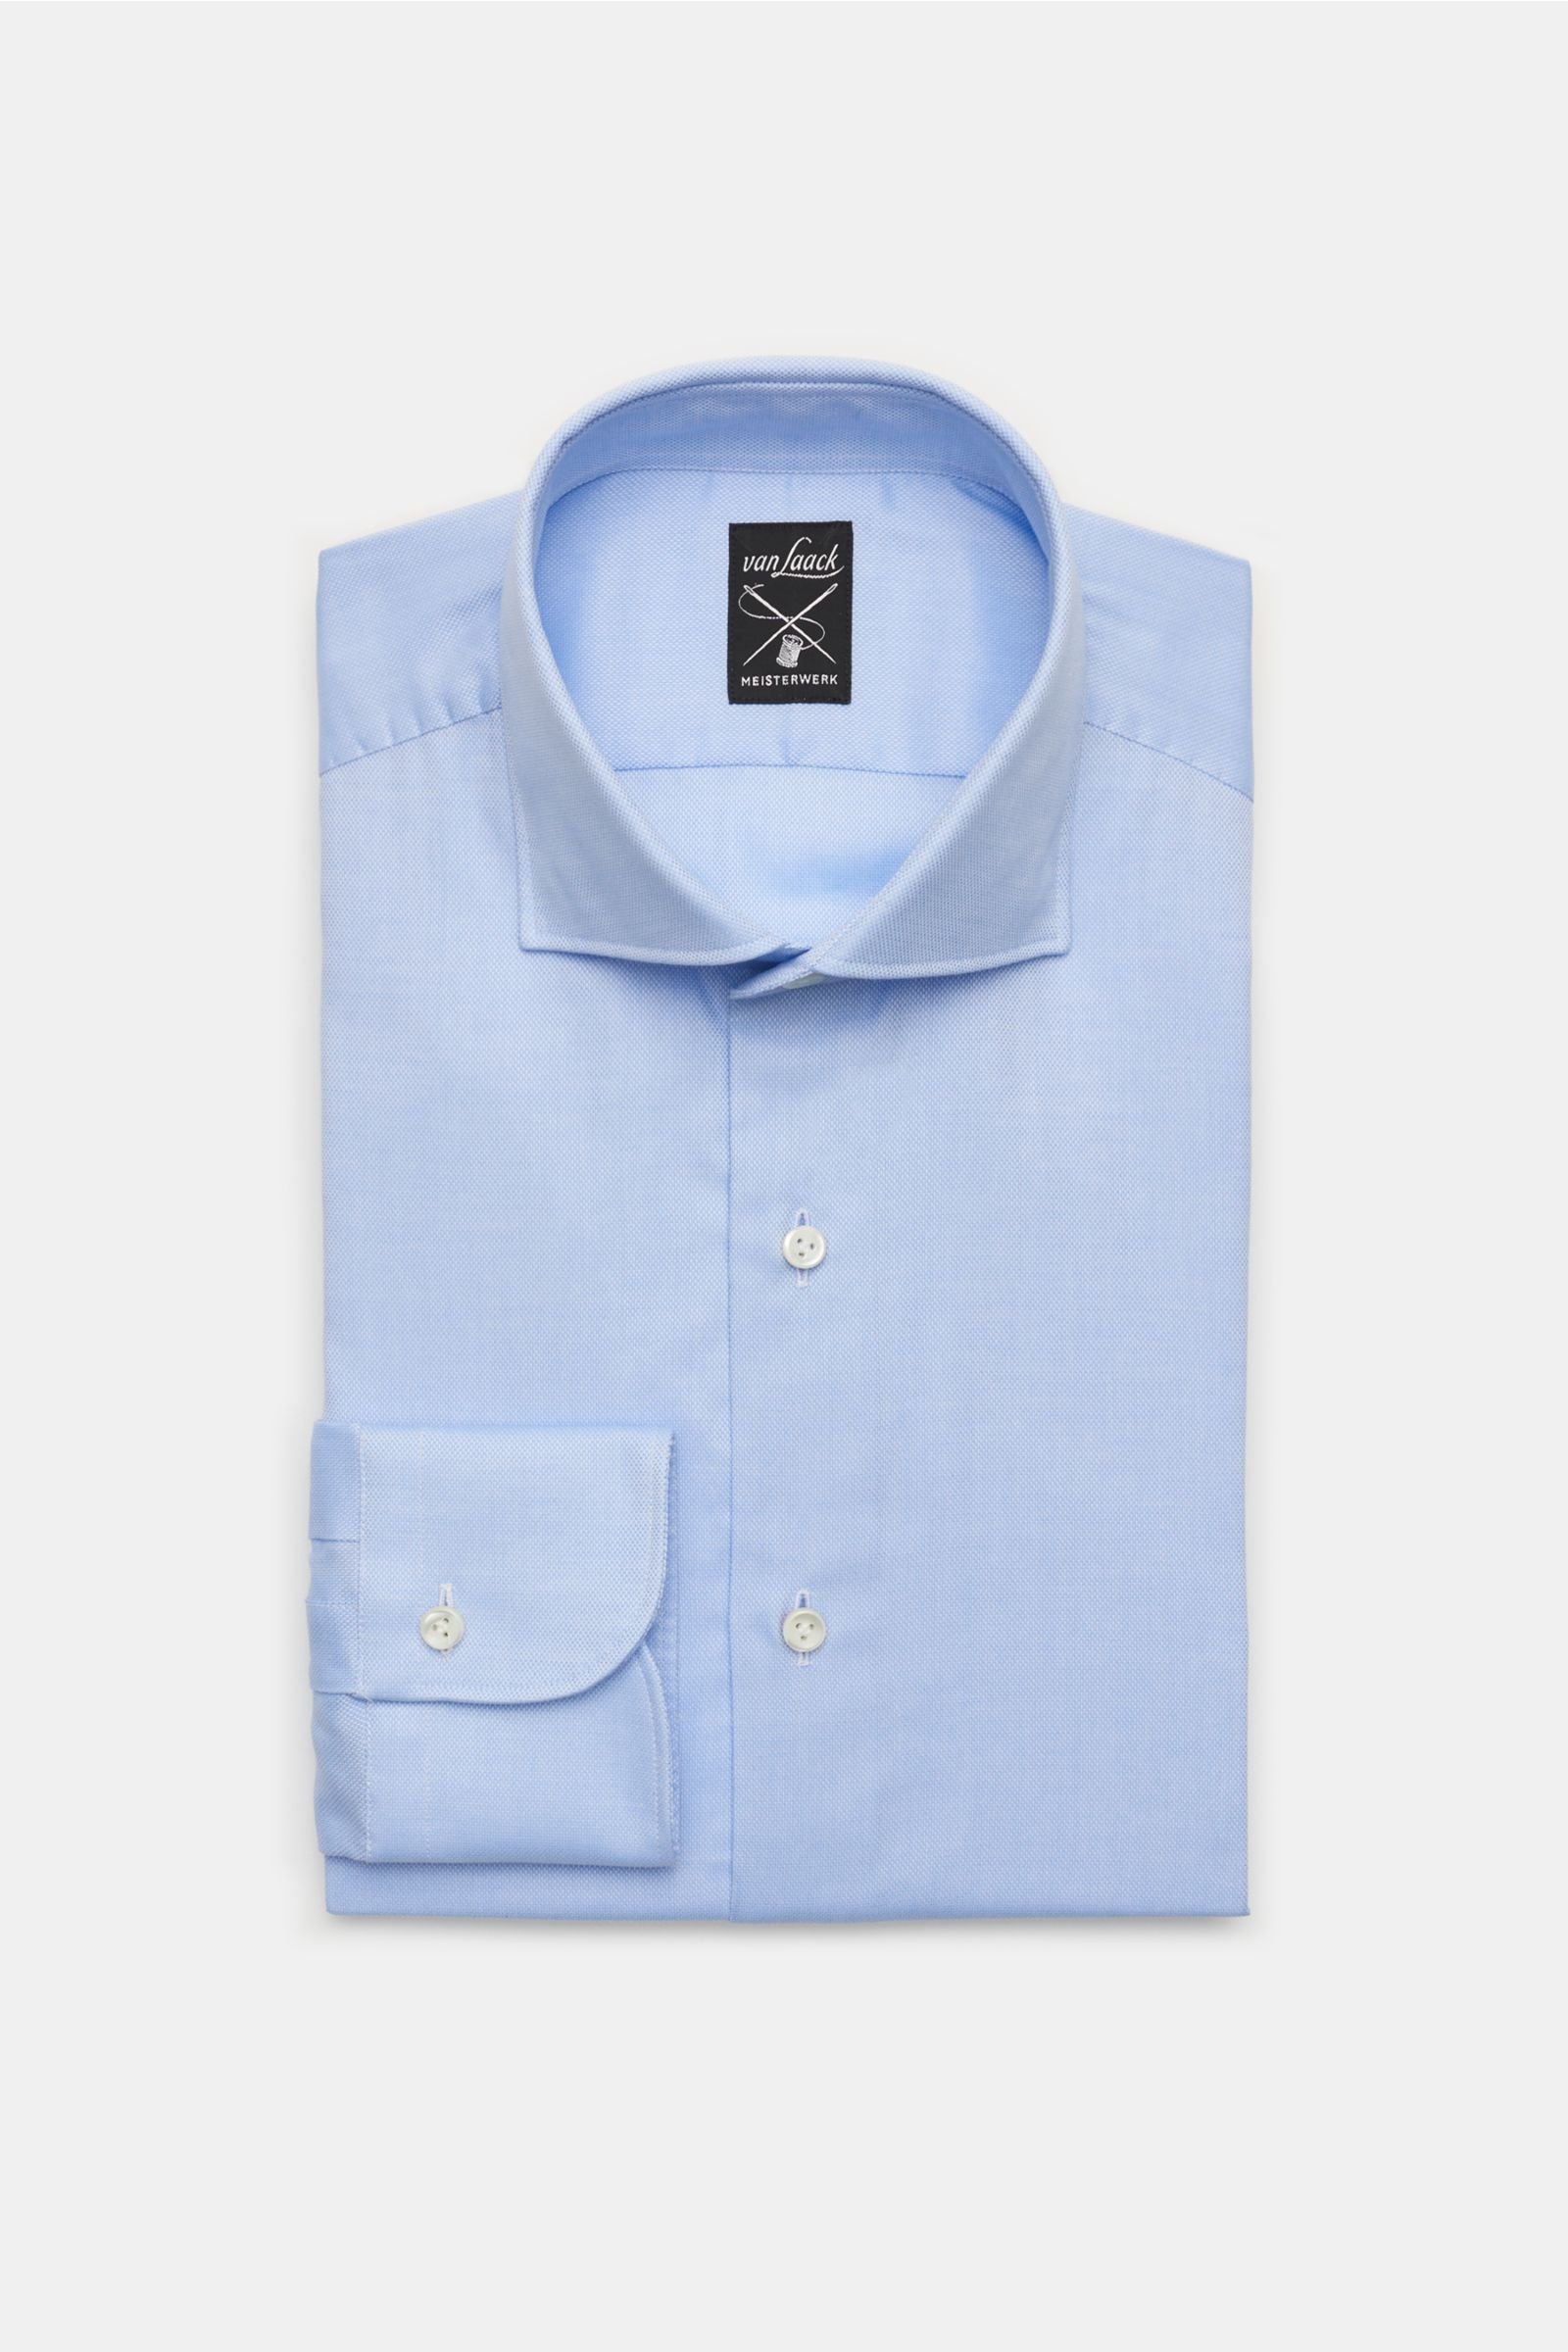 Oxfordhemd 'Mivara Tailor Fit' Haifisch-Kragen hellblau